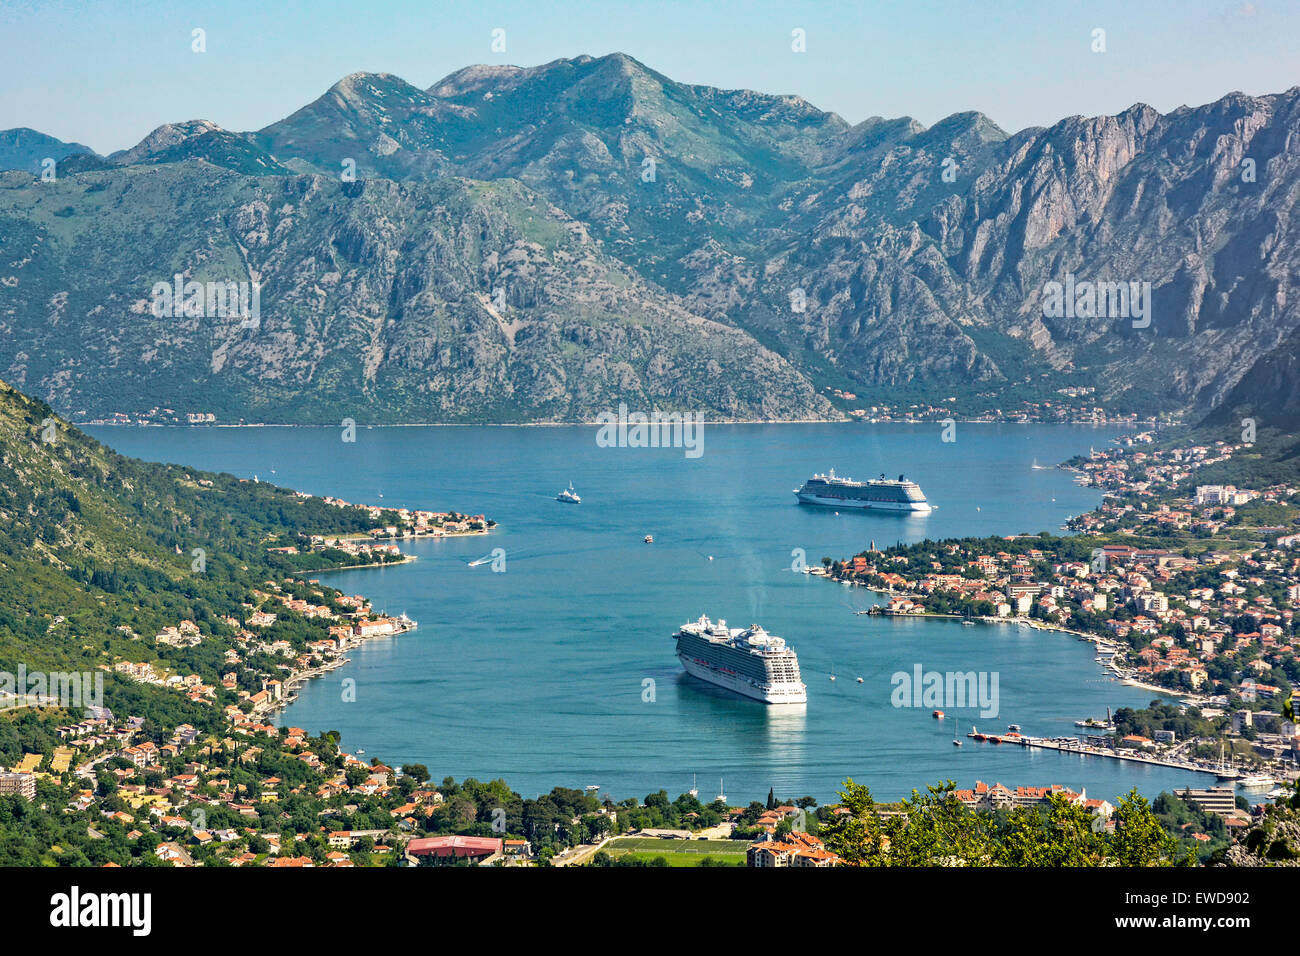 Monténégro Kotor,à la recherche sur la ville et la baie de Kotor avec les navires de croisière Regal Princess et Celebrity Silhouette mouillée au large Banque D'Images